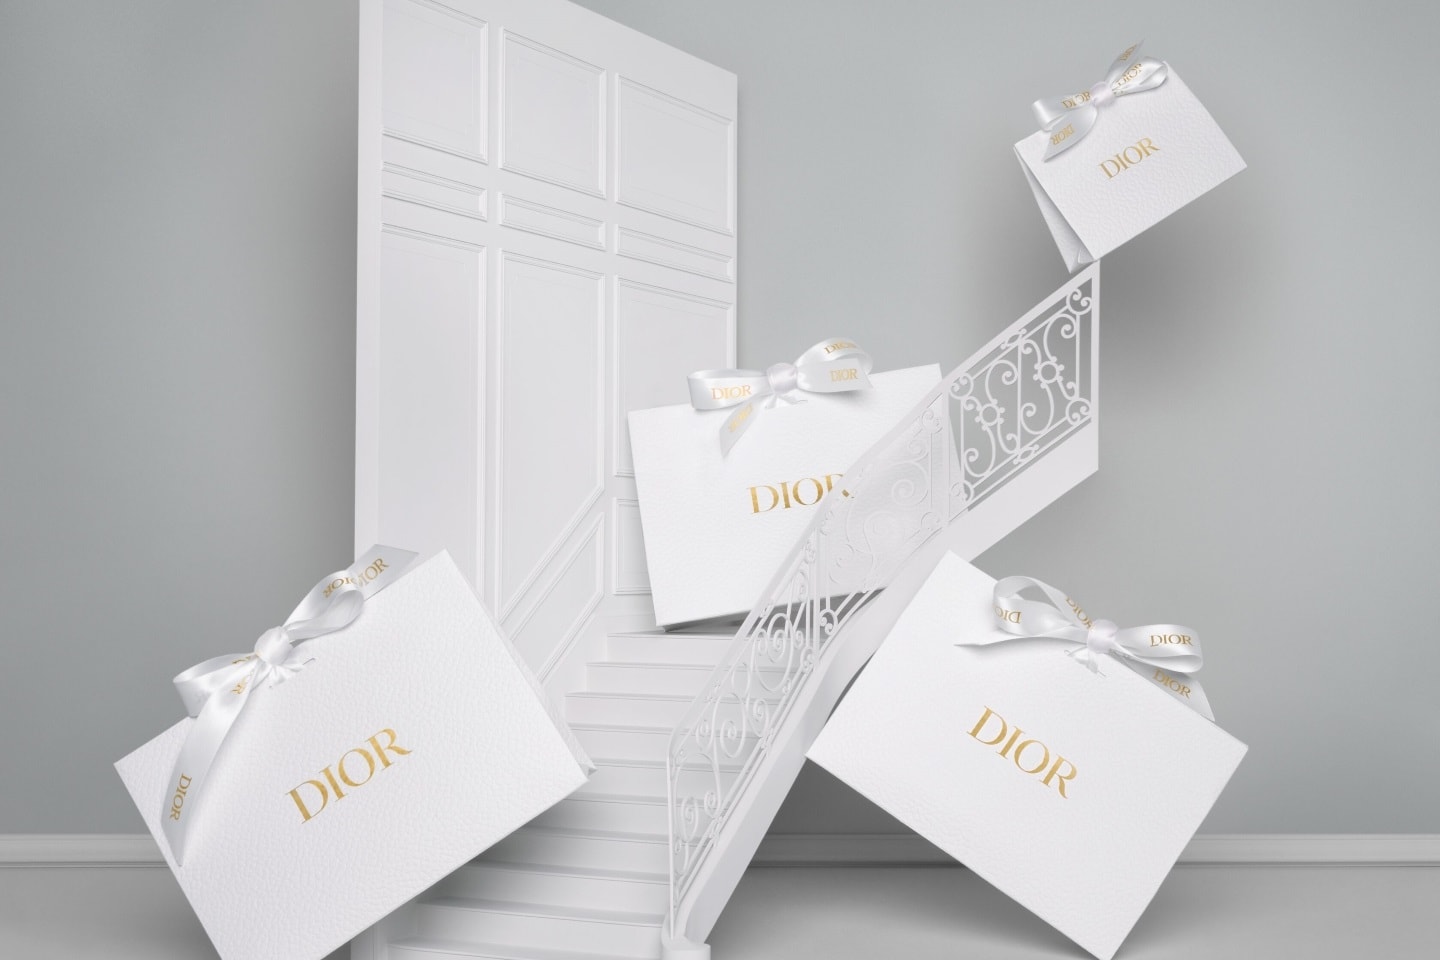 Dior Beauty American Express Hong Kong